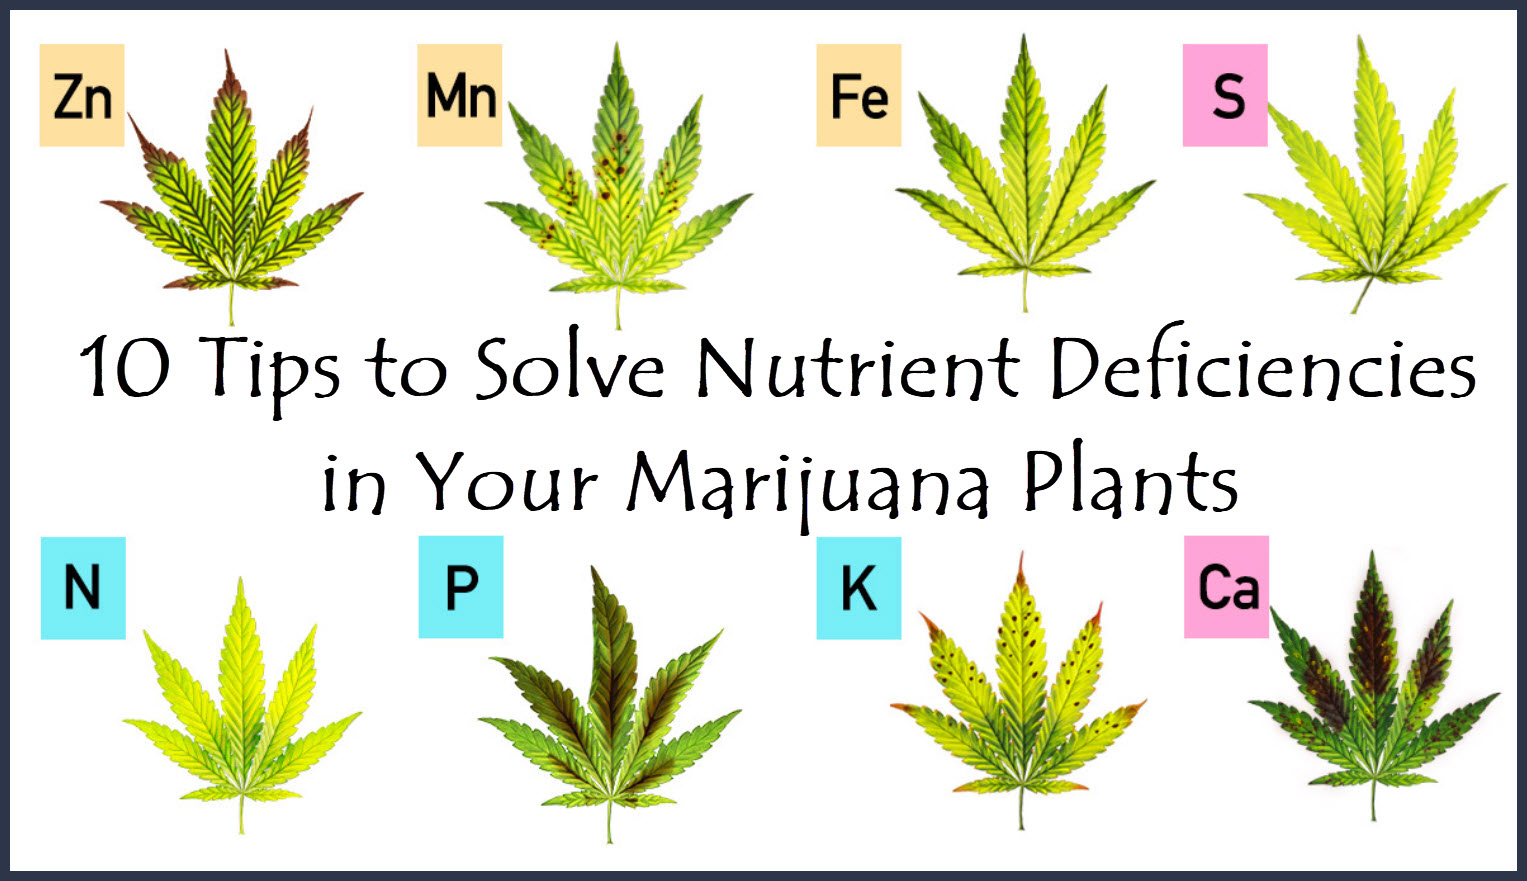 10 Tips to Solve Nutrient Deficiencies in Your Marijuana Plants